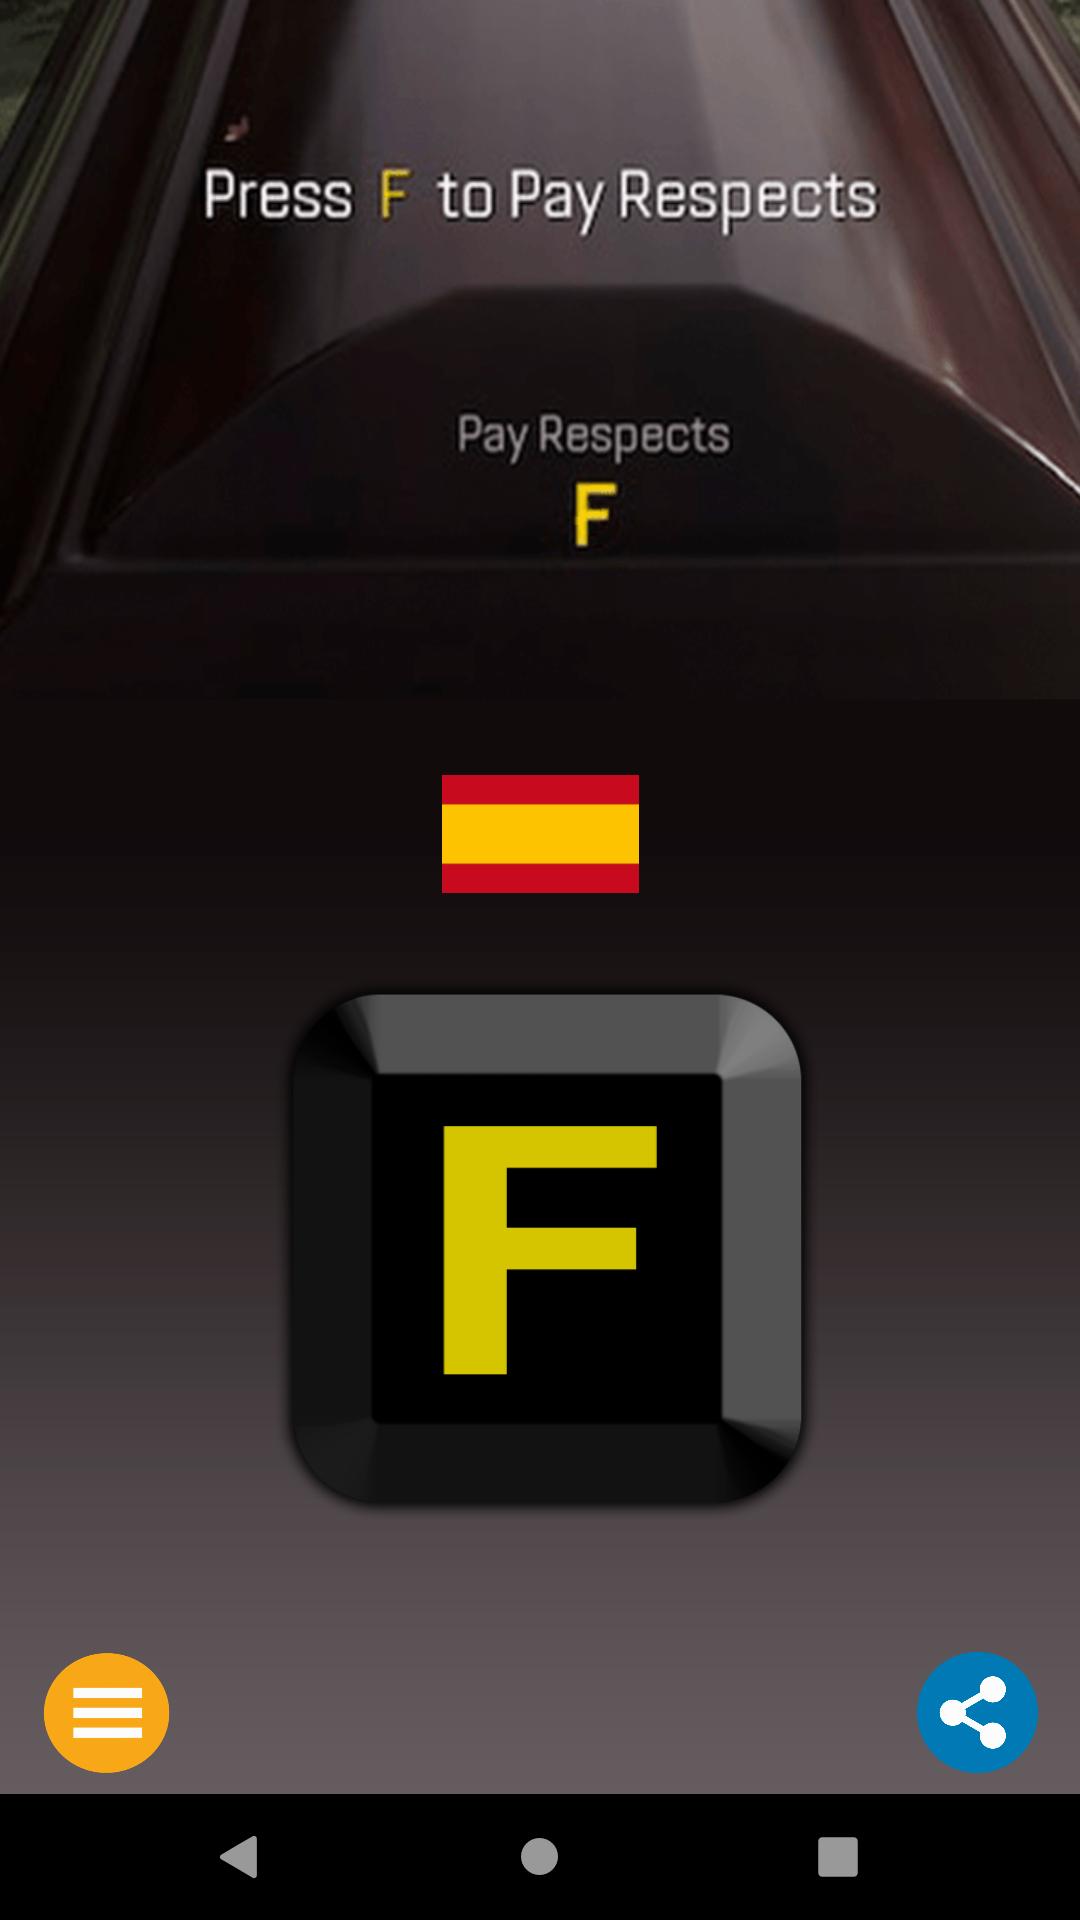 Press F button